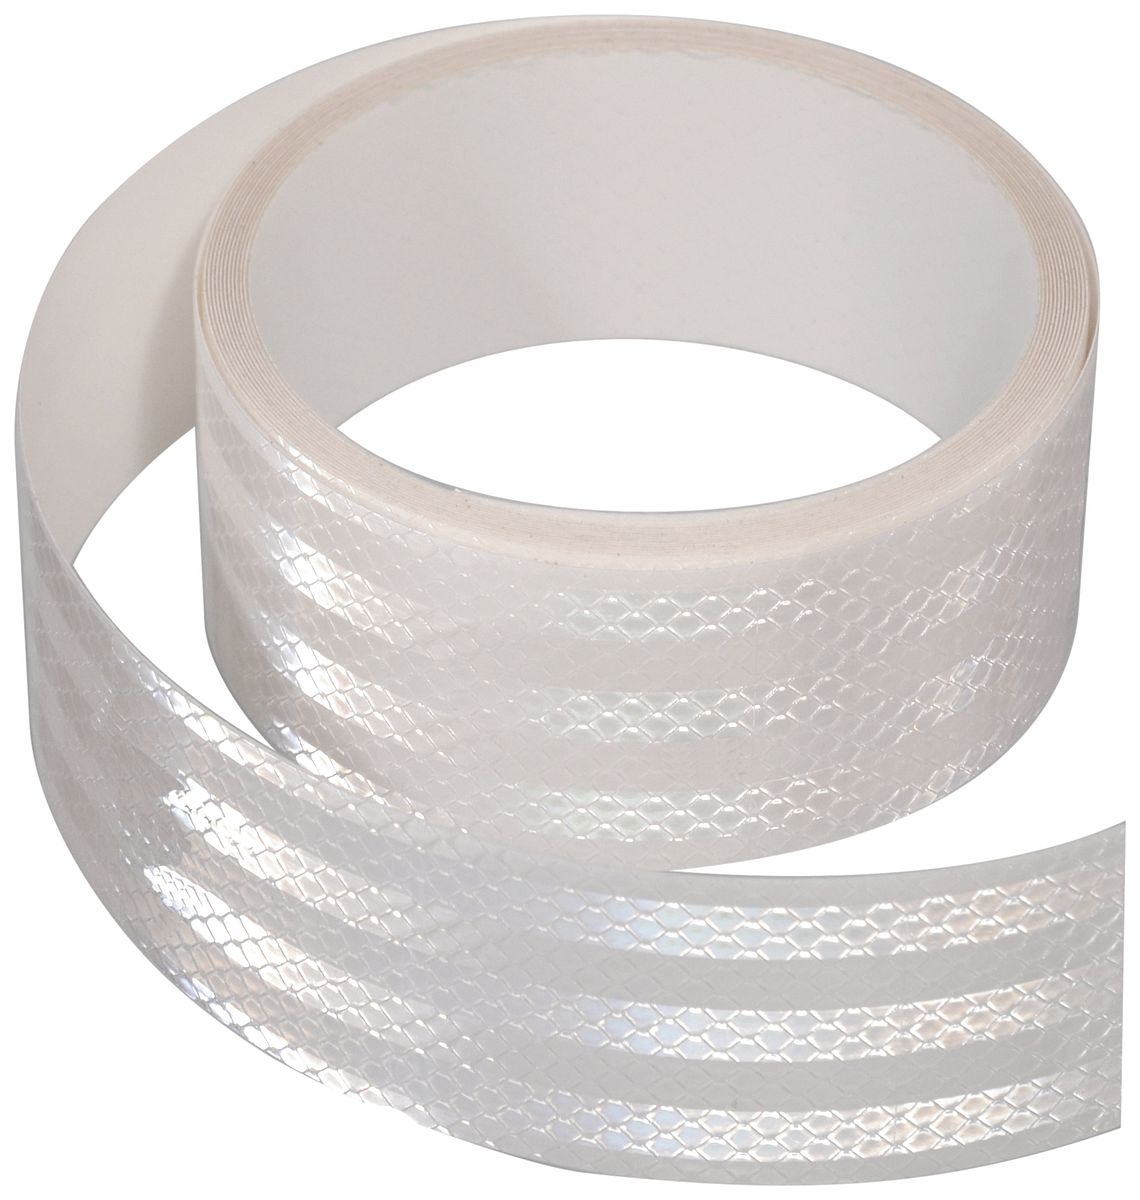 Samolepící páska reflexní 5m x 5cm bílá (role 5m) 01542